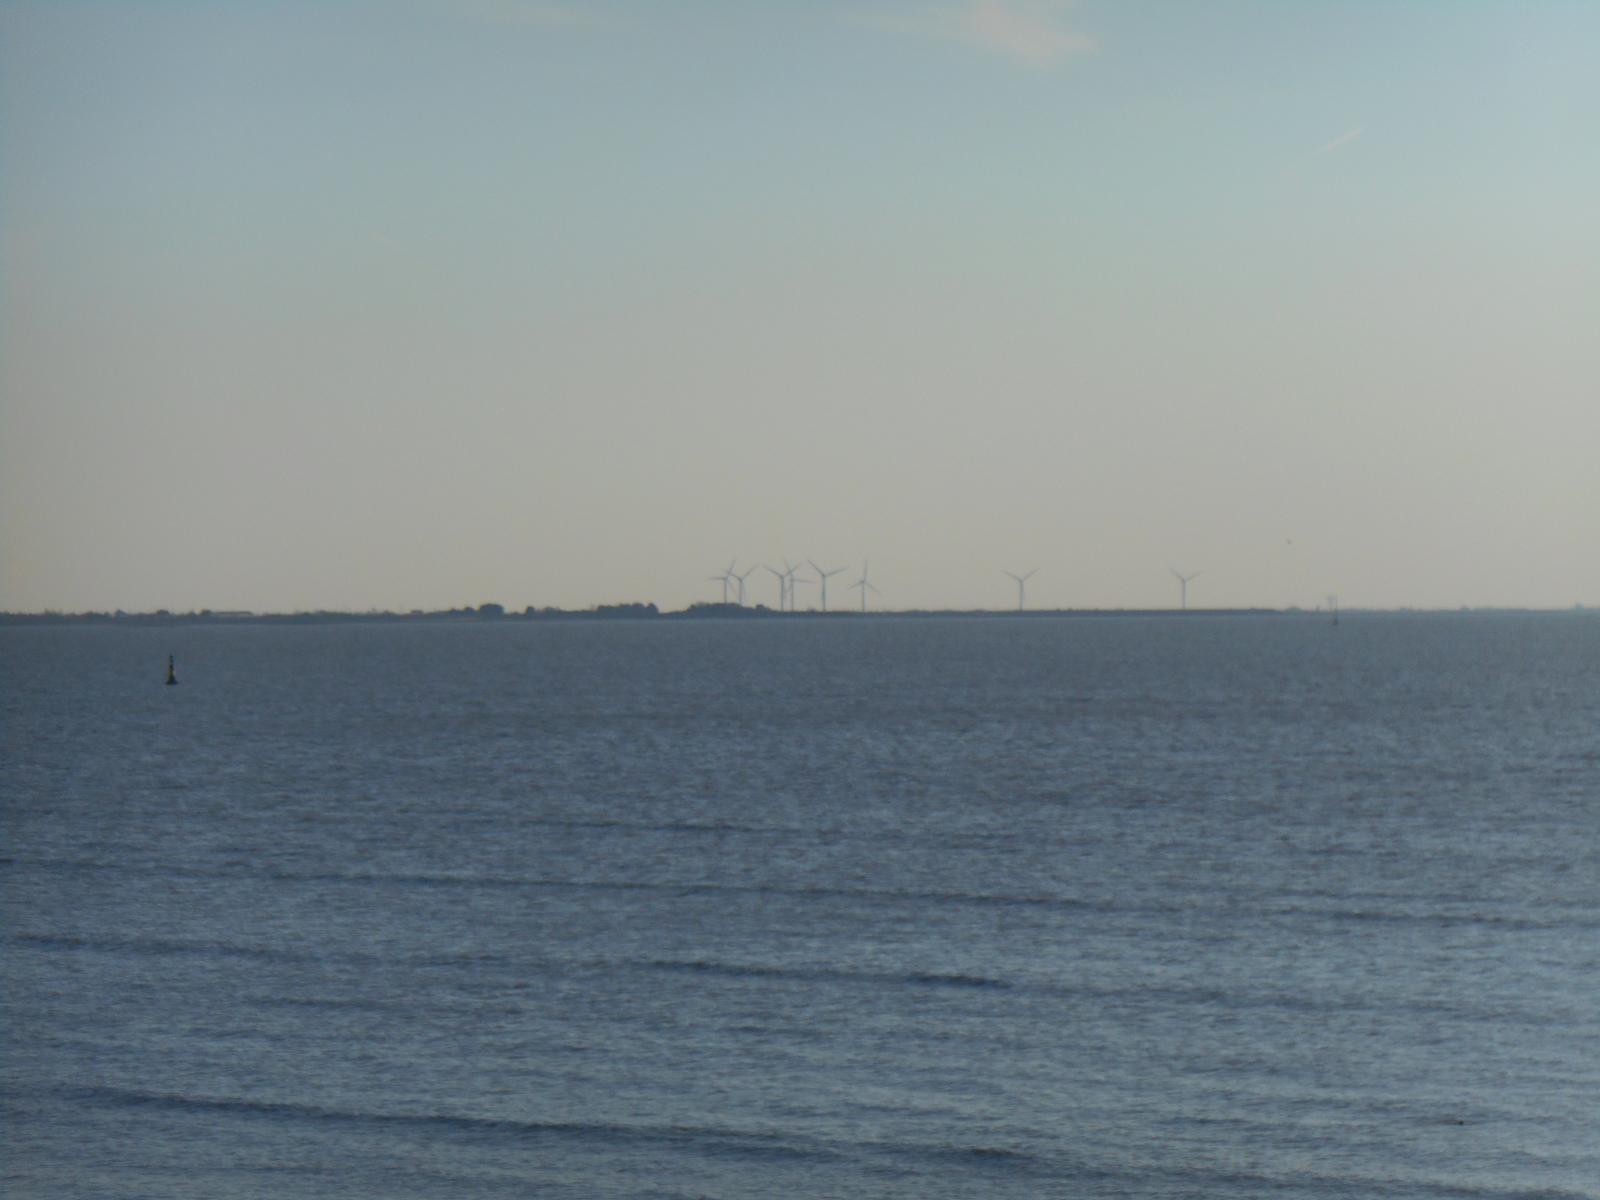 Les éoliennes, la Vendée au loin ( Les Moutiers en Retz )